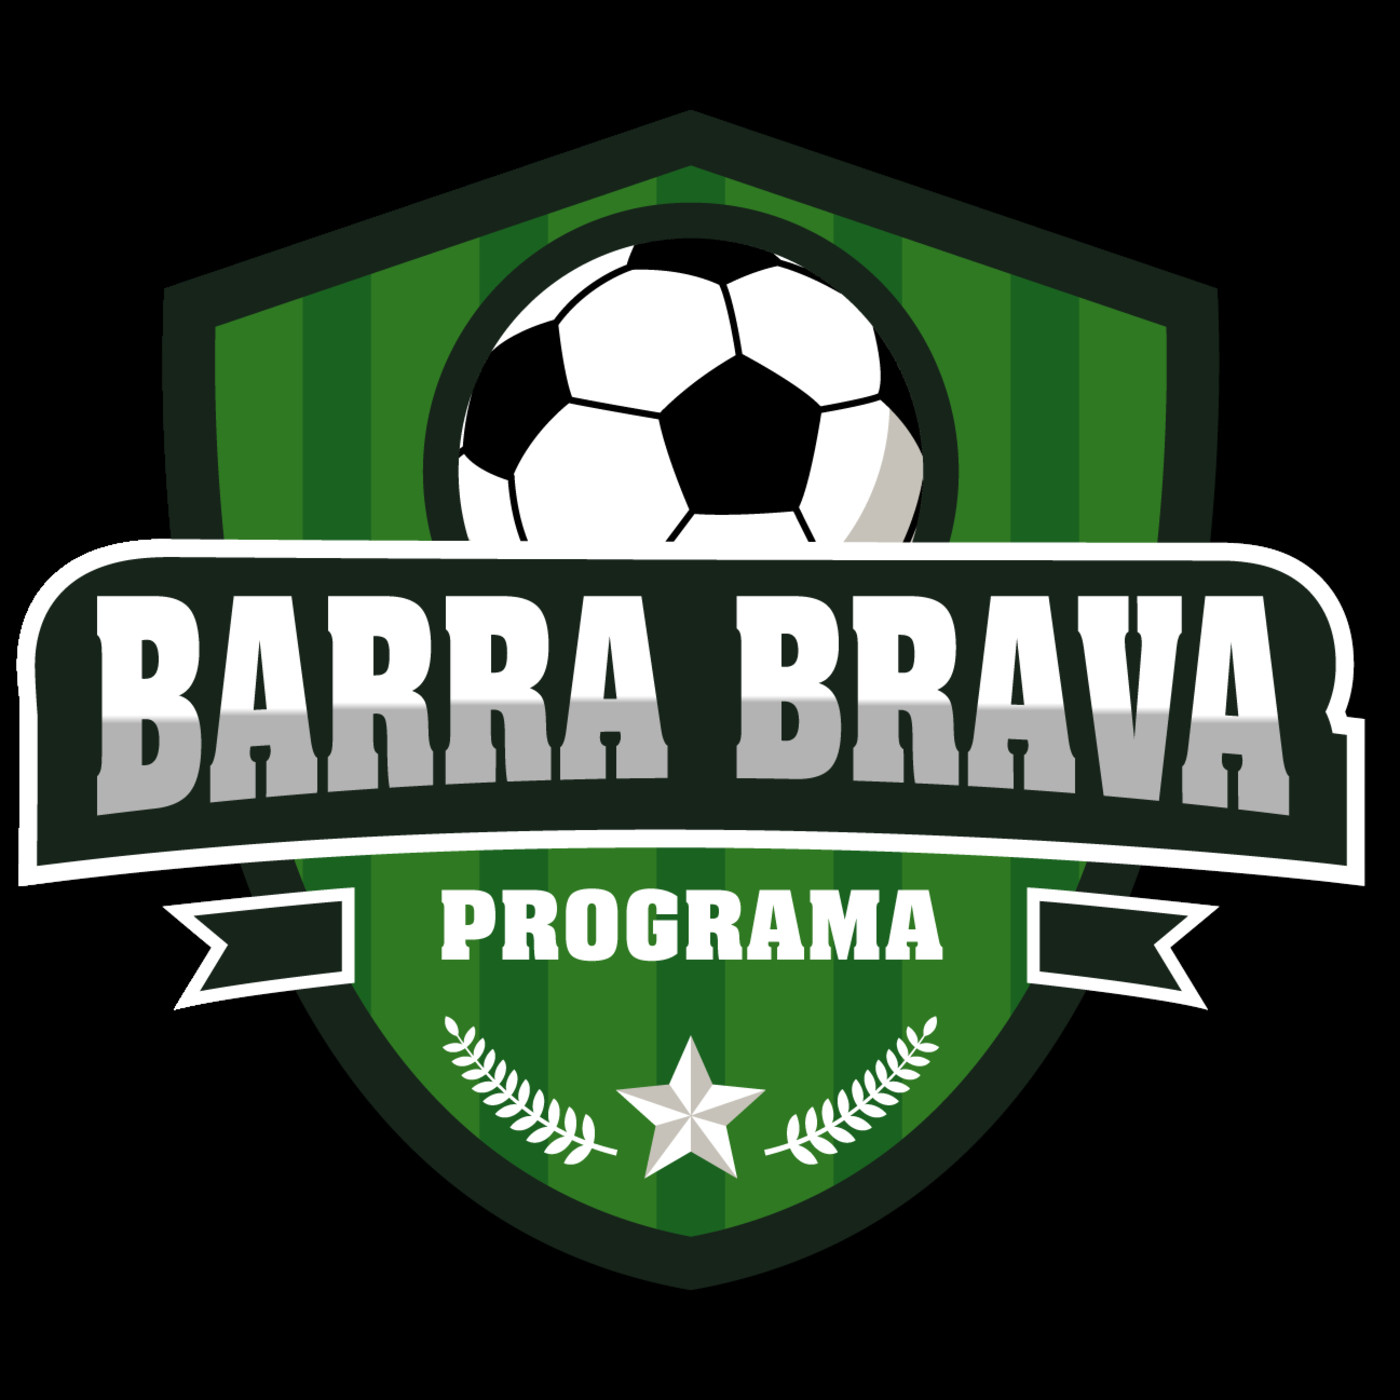 6. Podcast BARRA BRAVA Programa 20 de Mayo de 2019